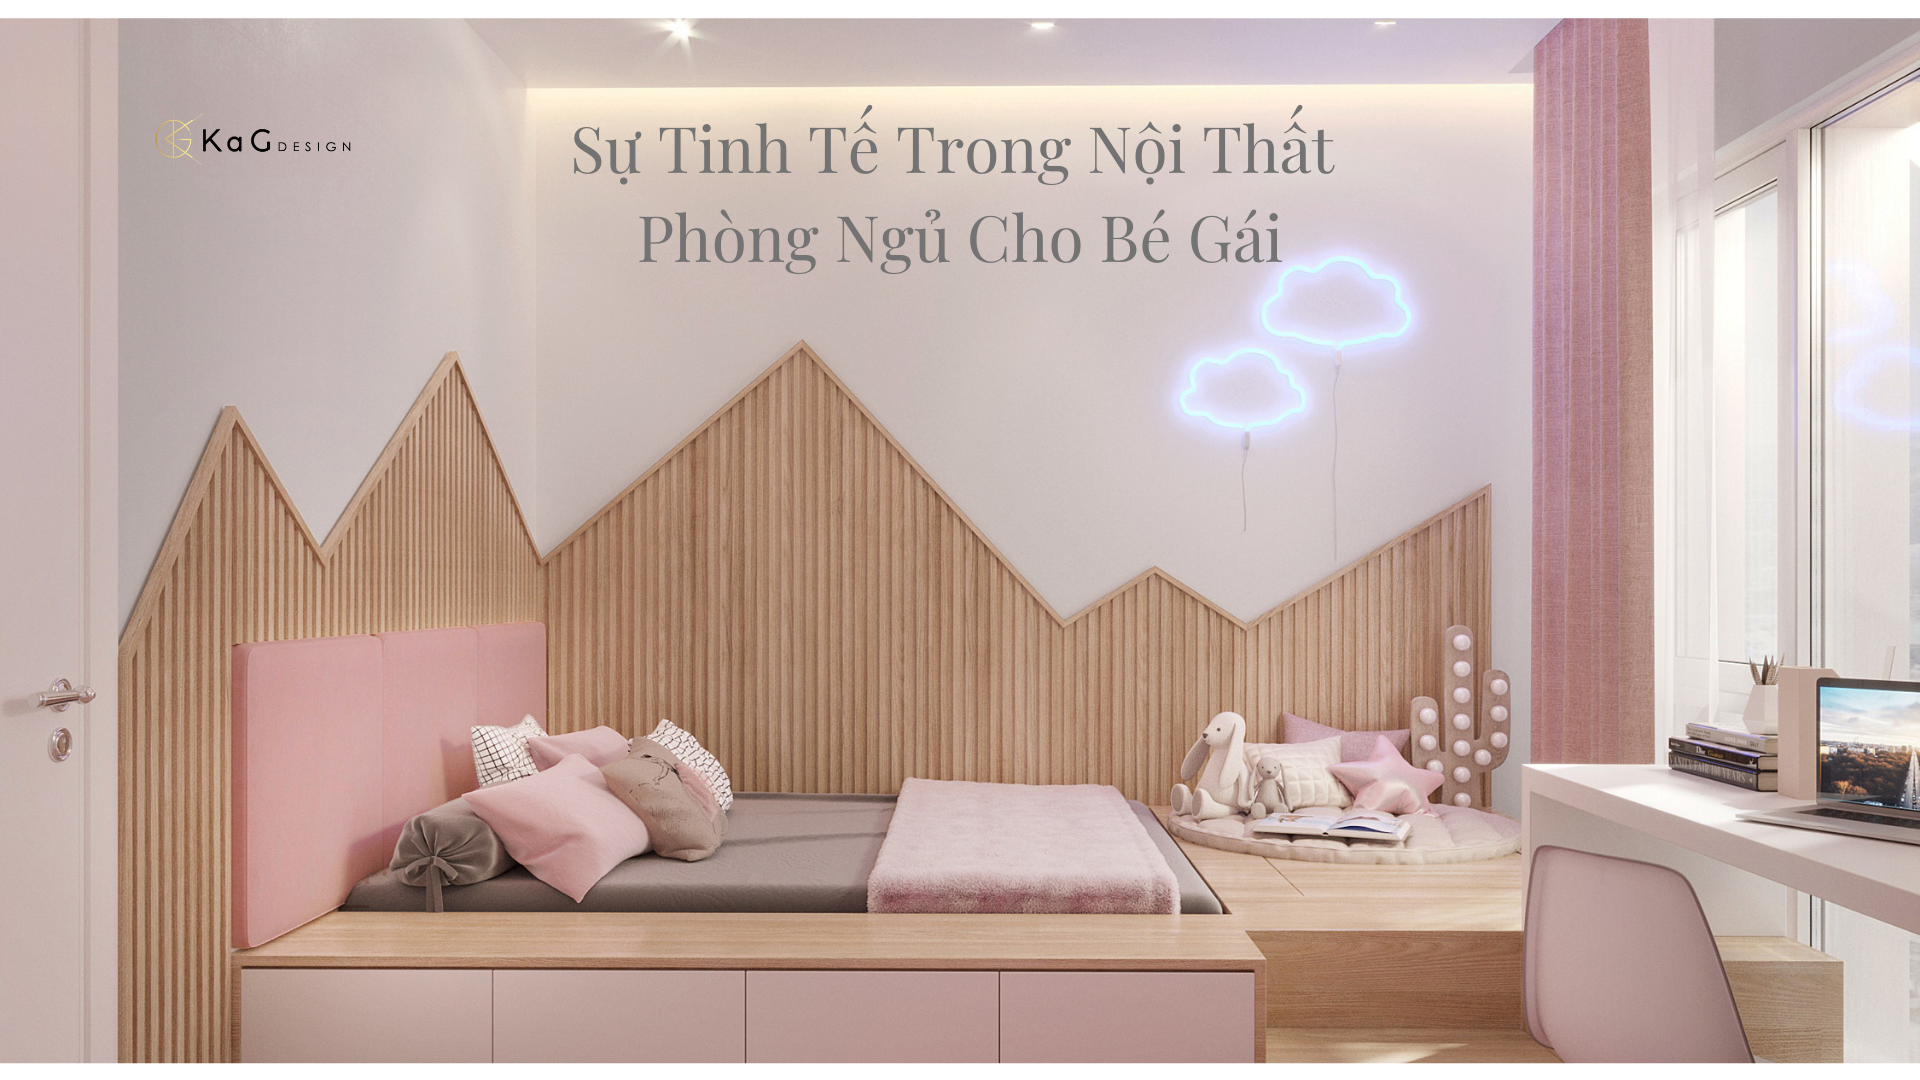 Sự tinh tế trong nội thất phòng ngủ cho bé gái - KaG Internior Design